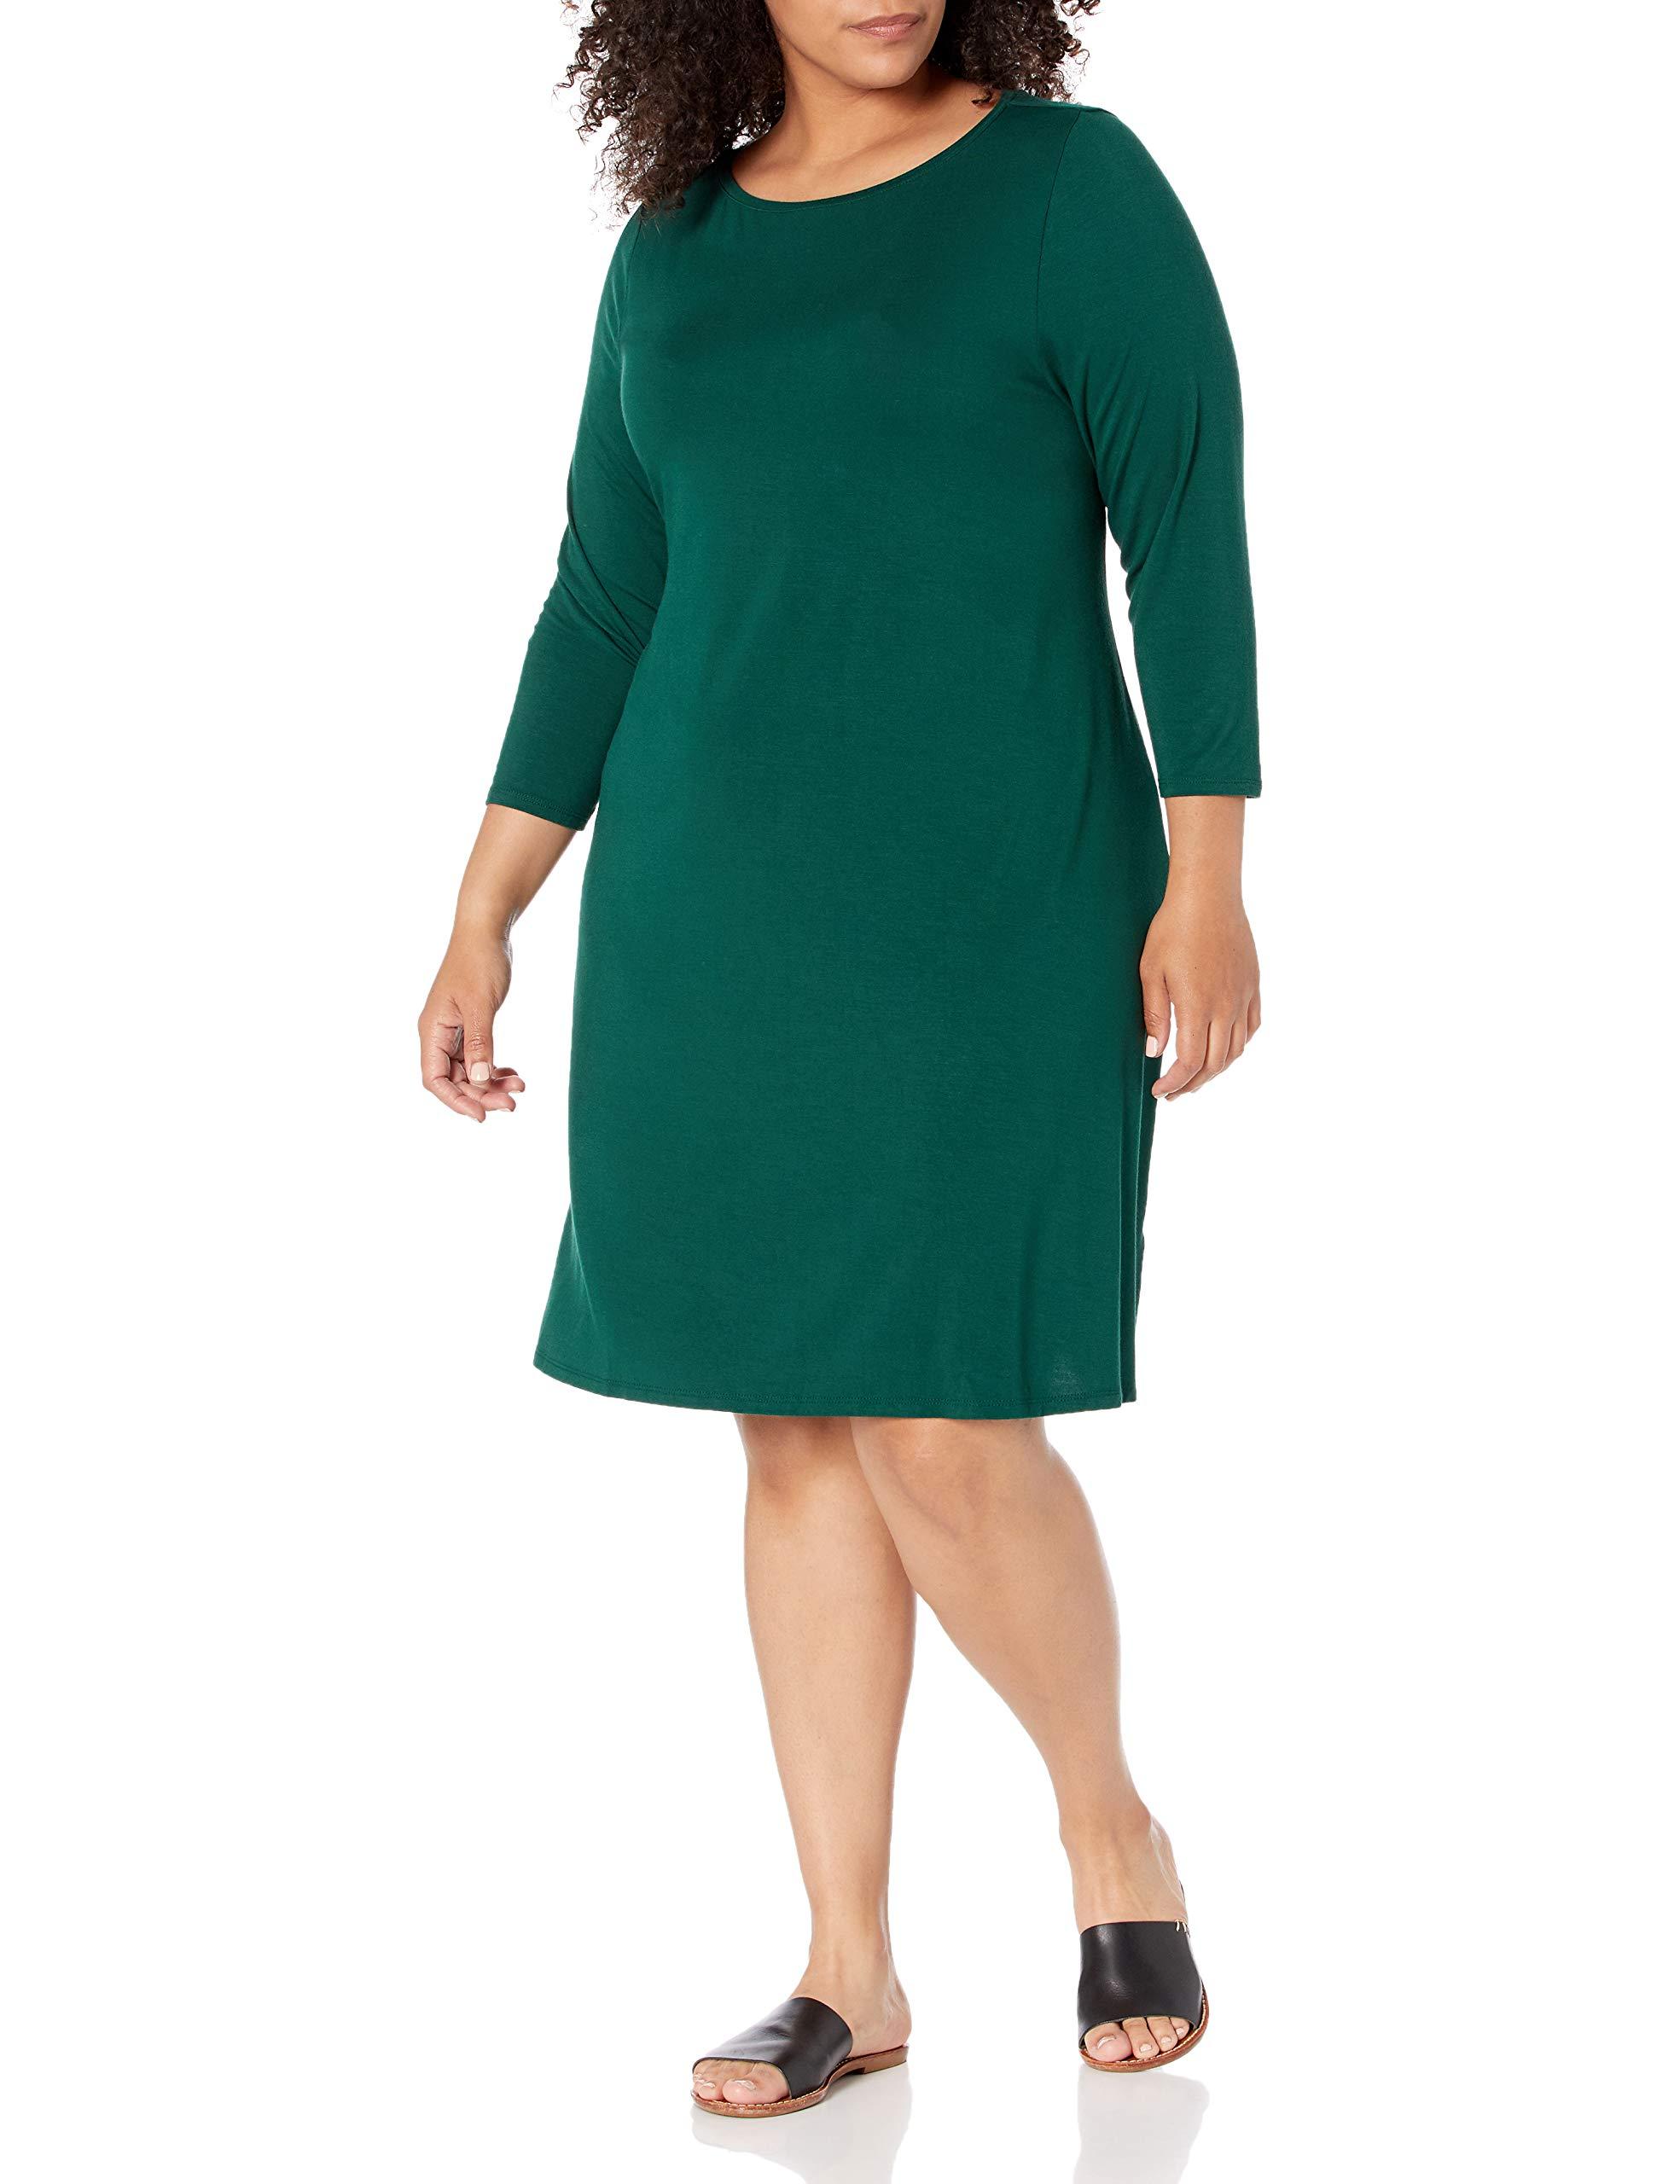 Amazon Essentials Plus Size 3/4 Sleeve Boatneck Dress Kleid in Grün -  Sparen Sie 31% - Lyst